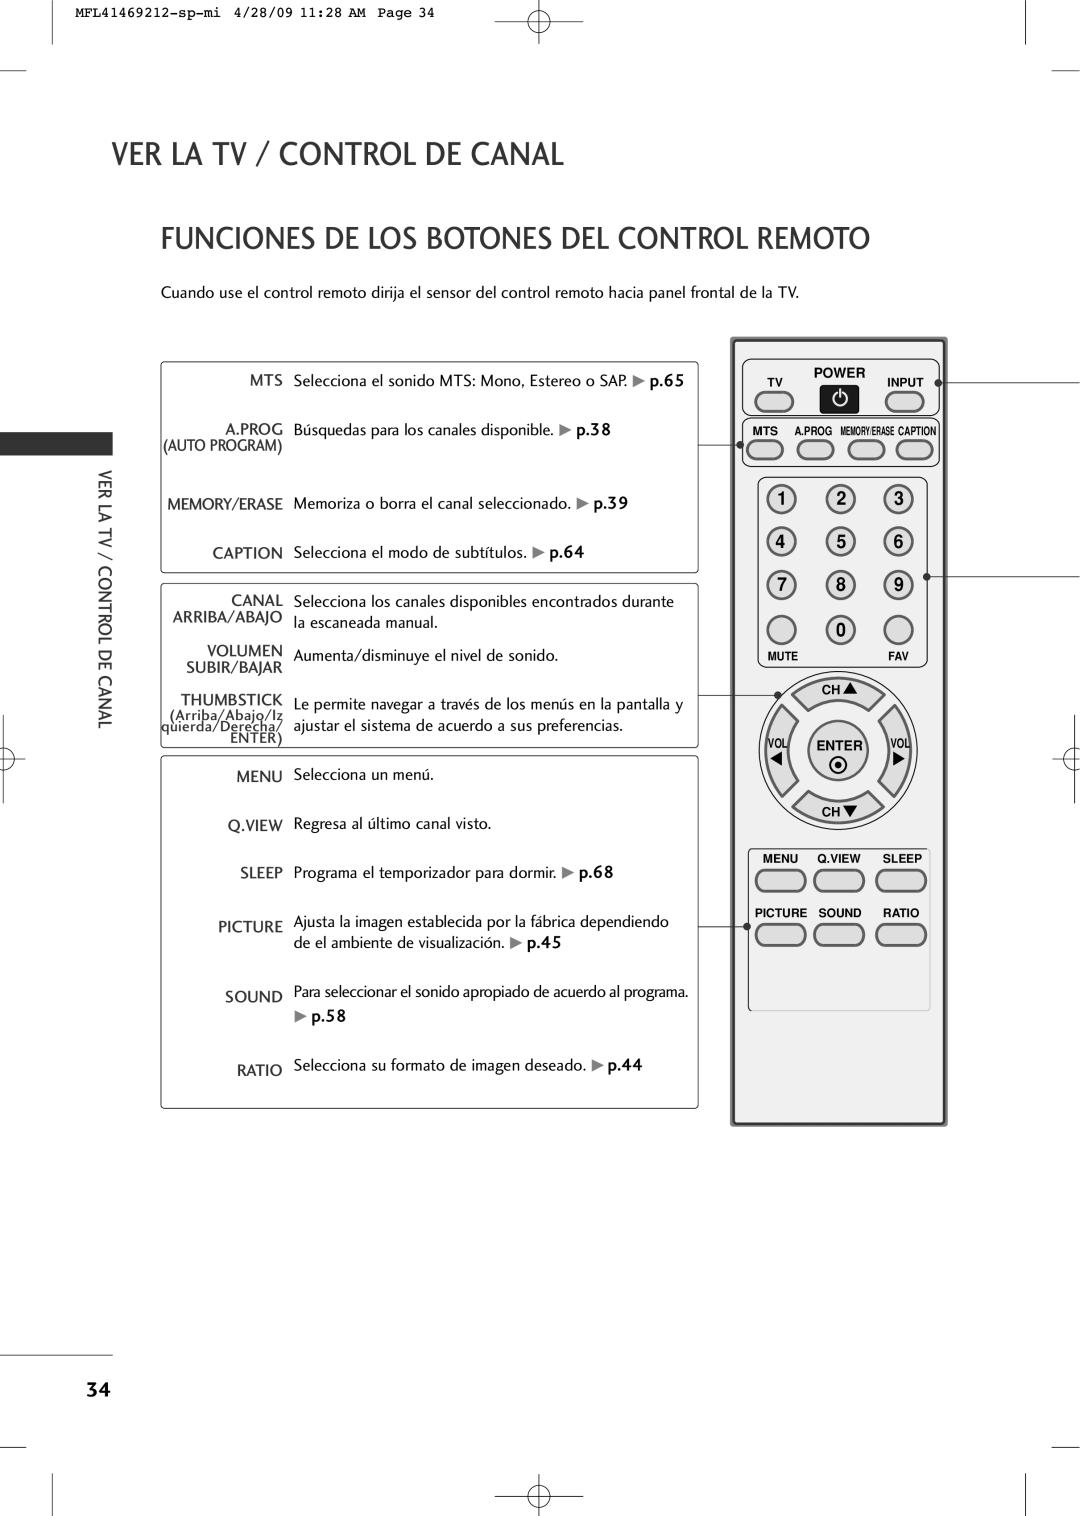 LG Electronics 2230R-MA manual Ver La Tv / Control De Canal, Funciones De Los Botones Del Control Remoto, 1 2 4 5 7 8 